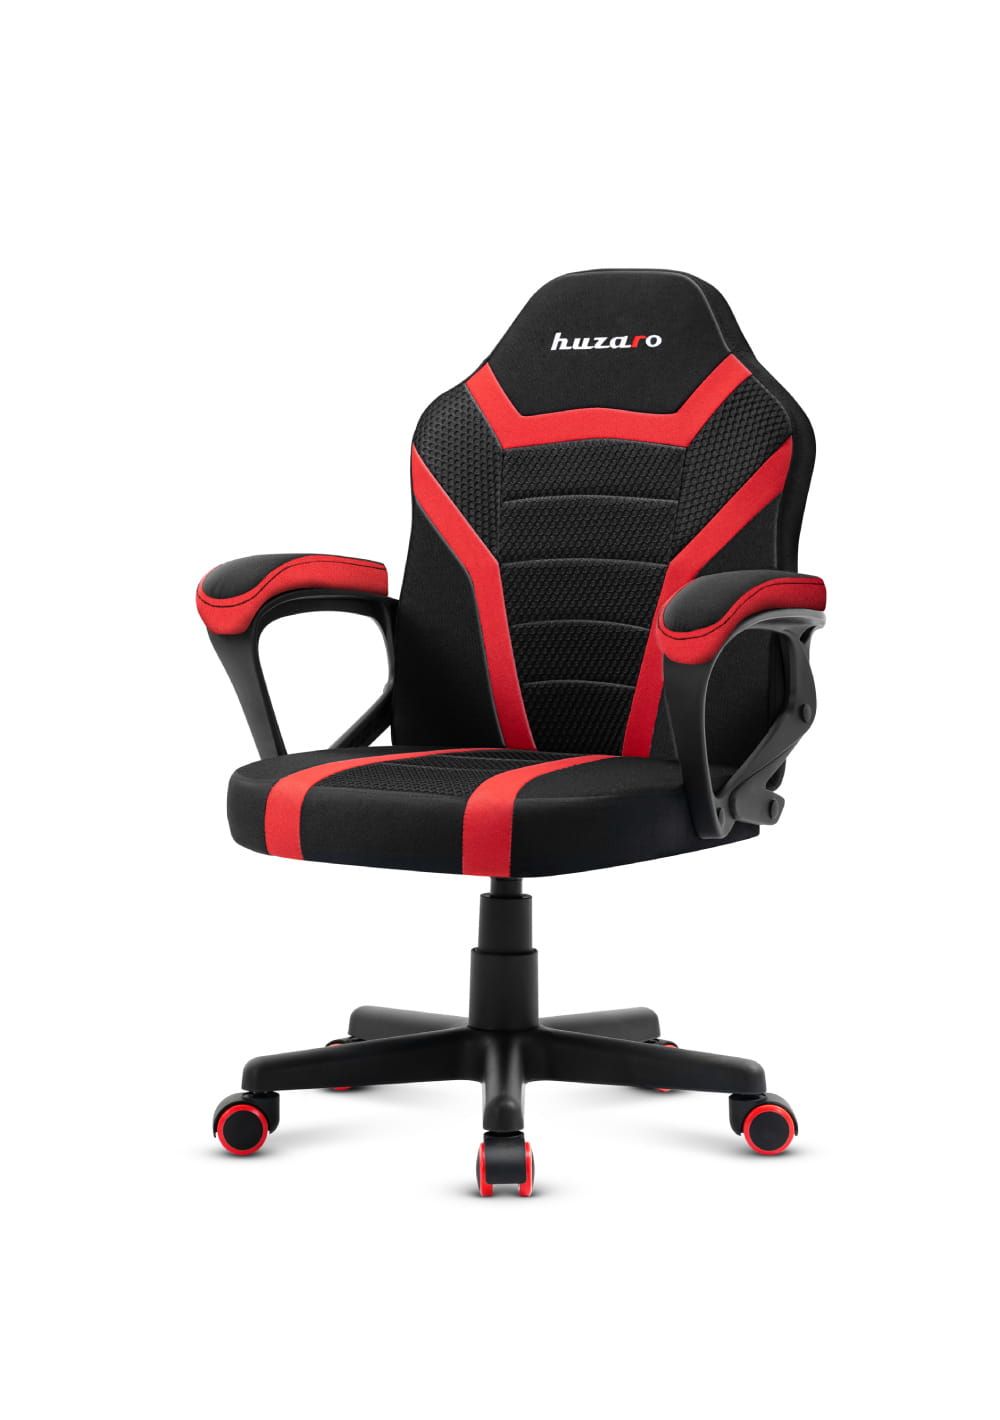 Gaming chair for children Huzaro Ranger 1.0 Red Mesh, black, red_5